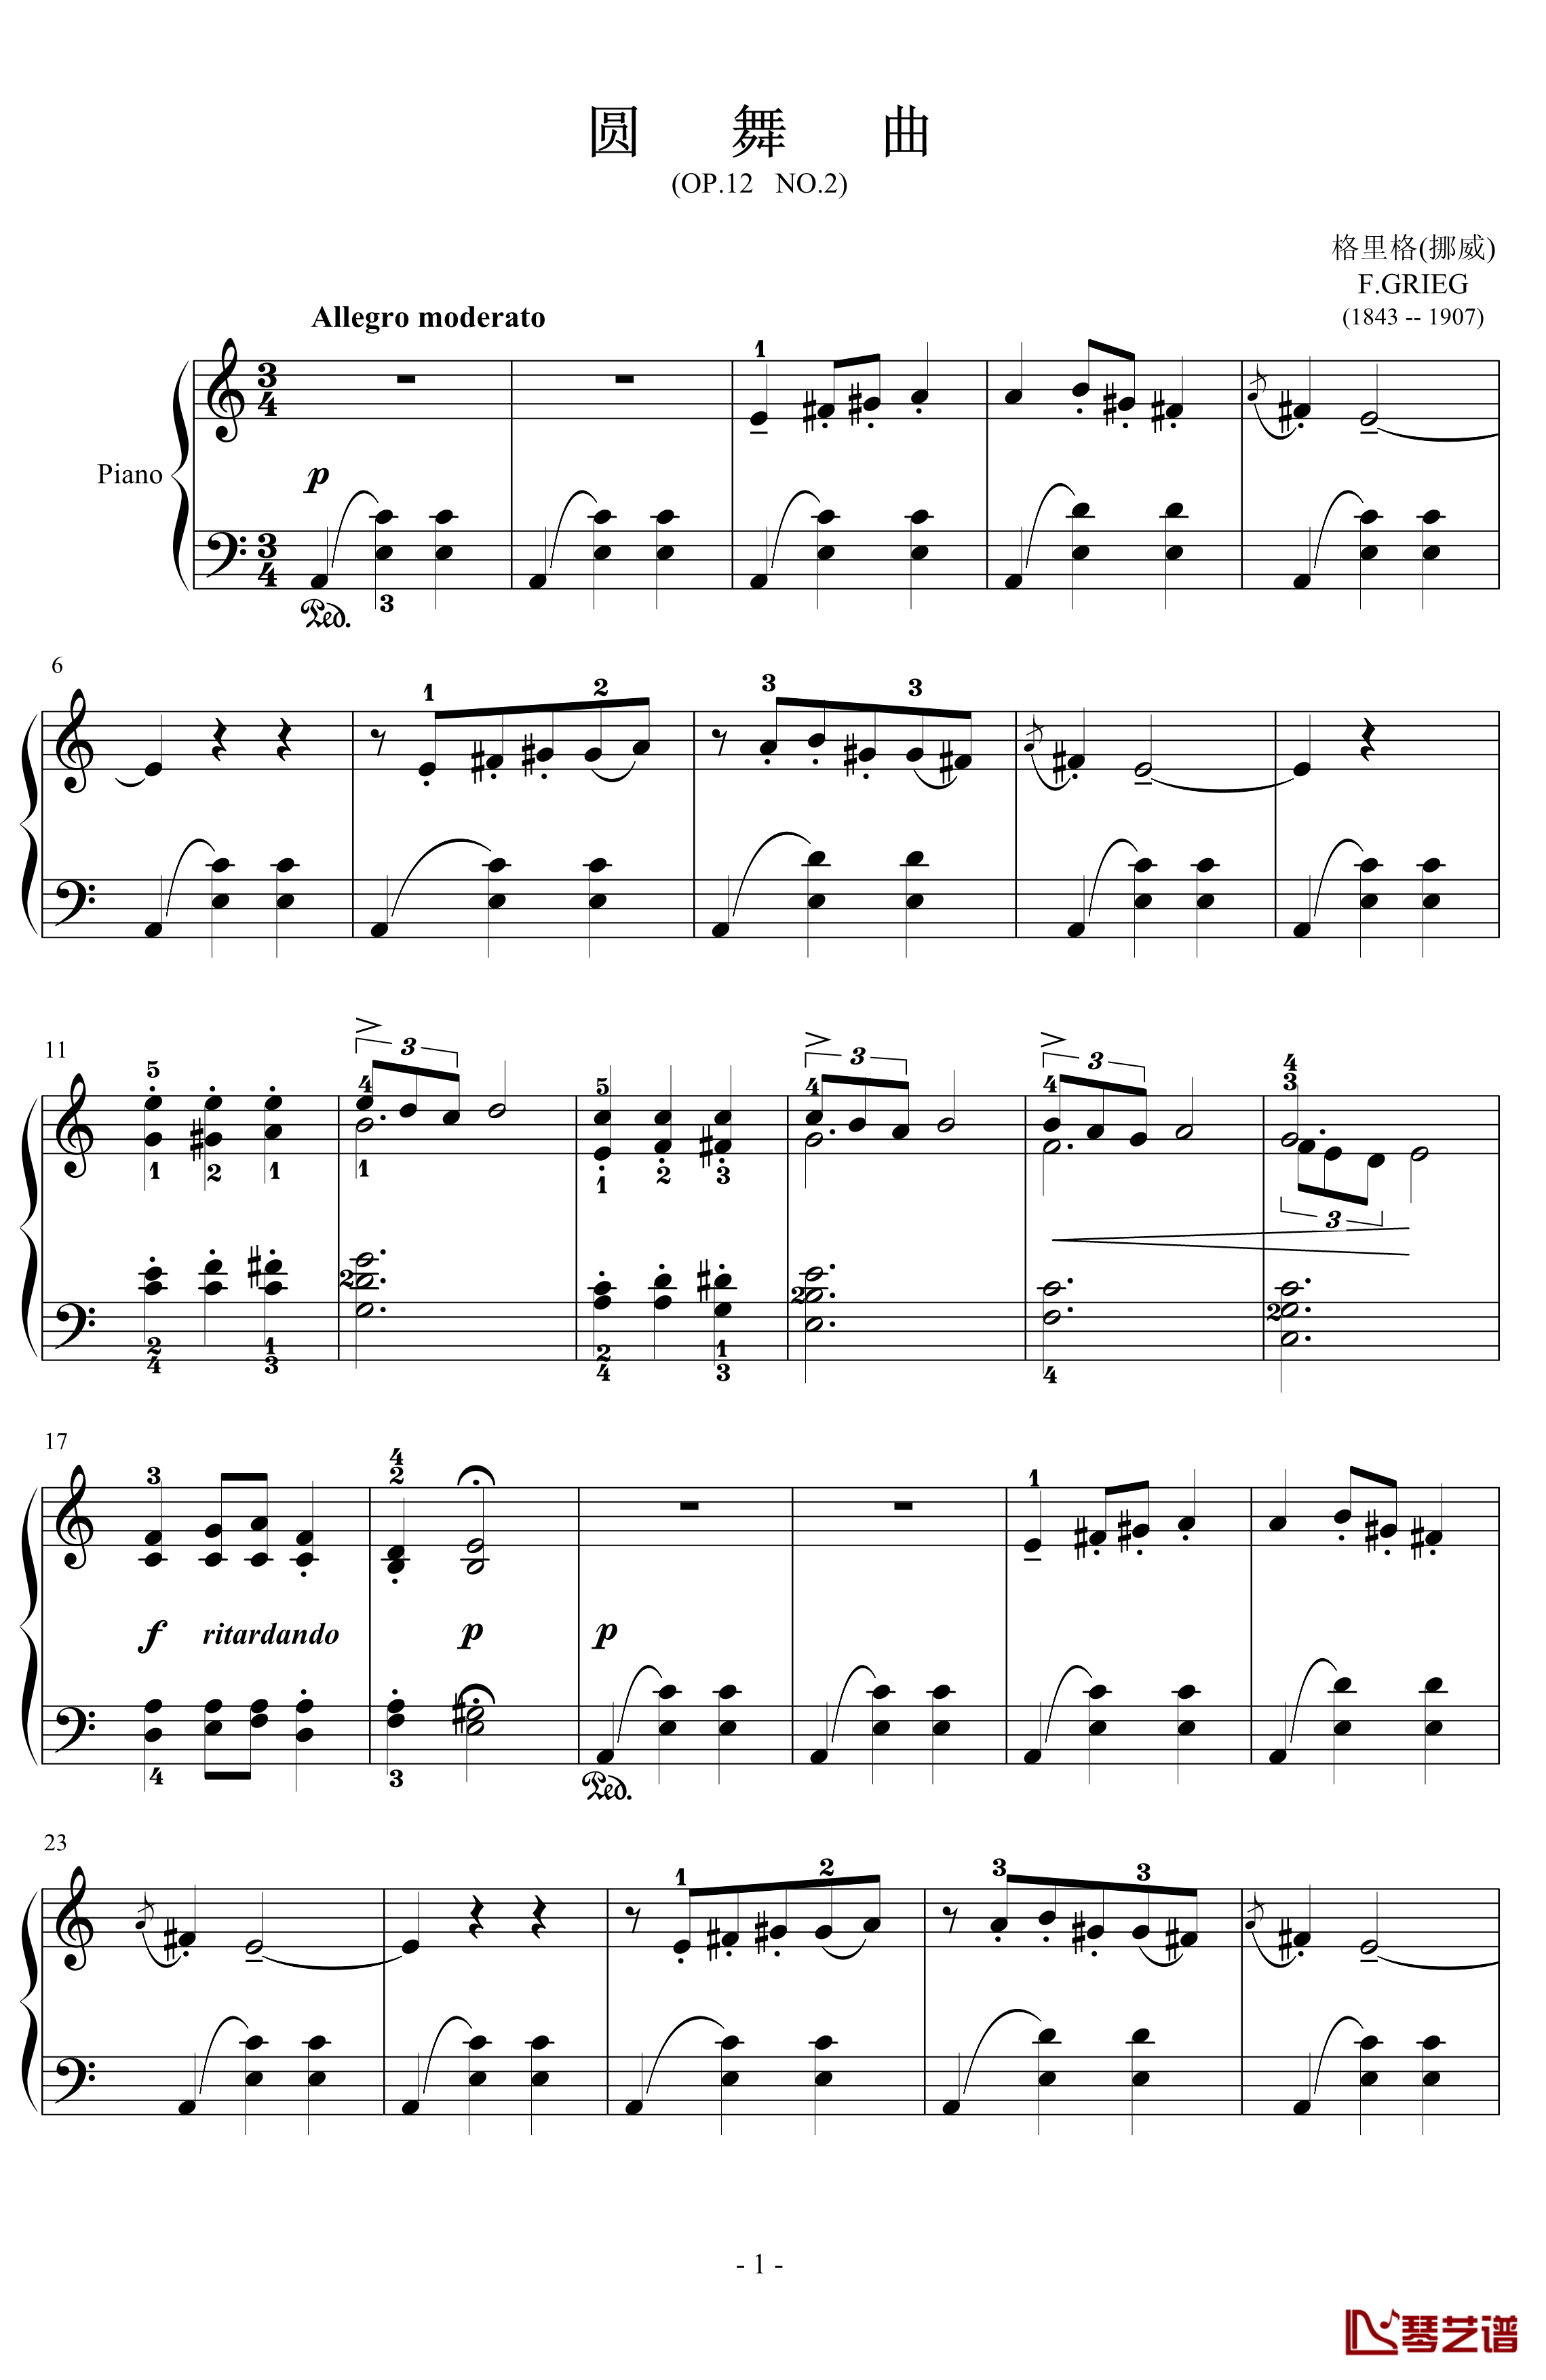 圆舞曲钢琴谱-格里格1